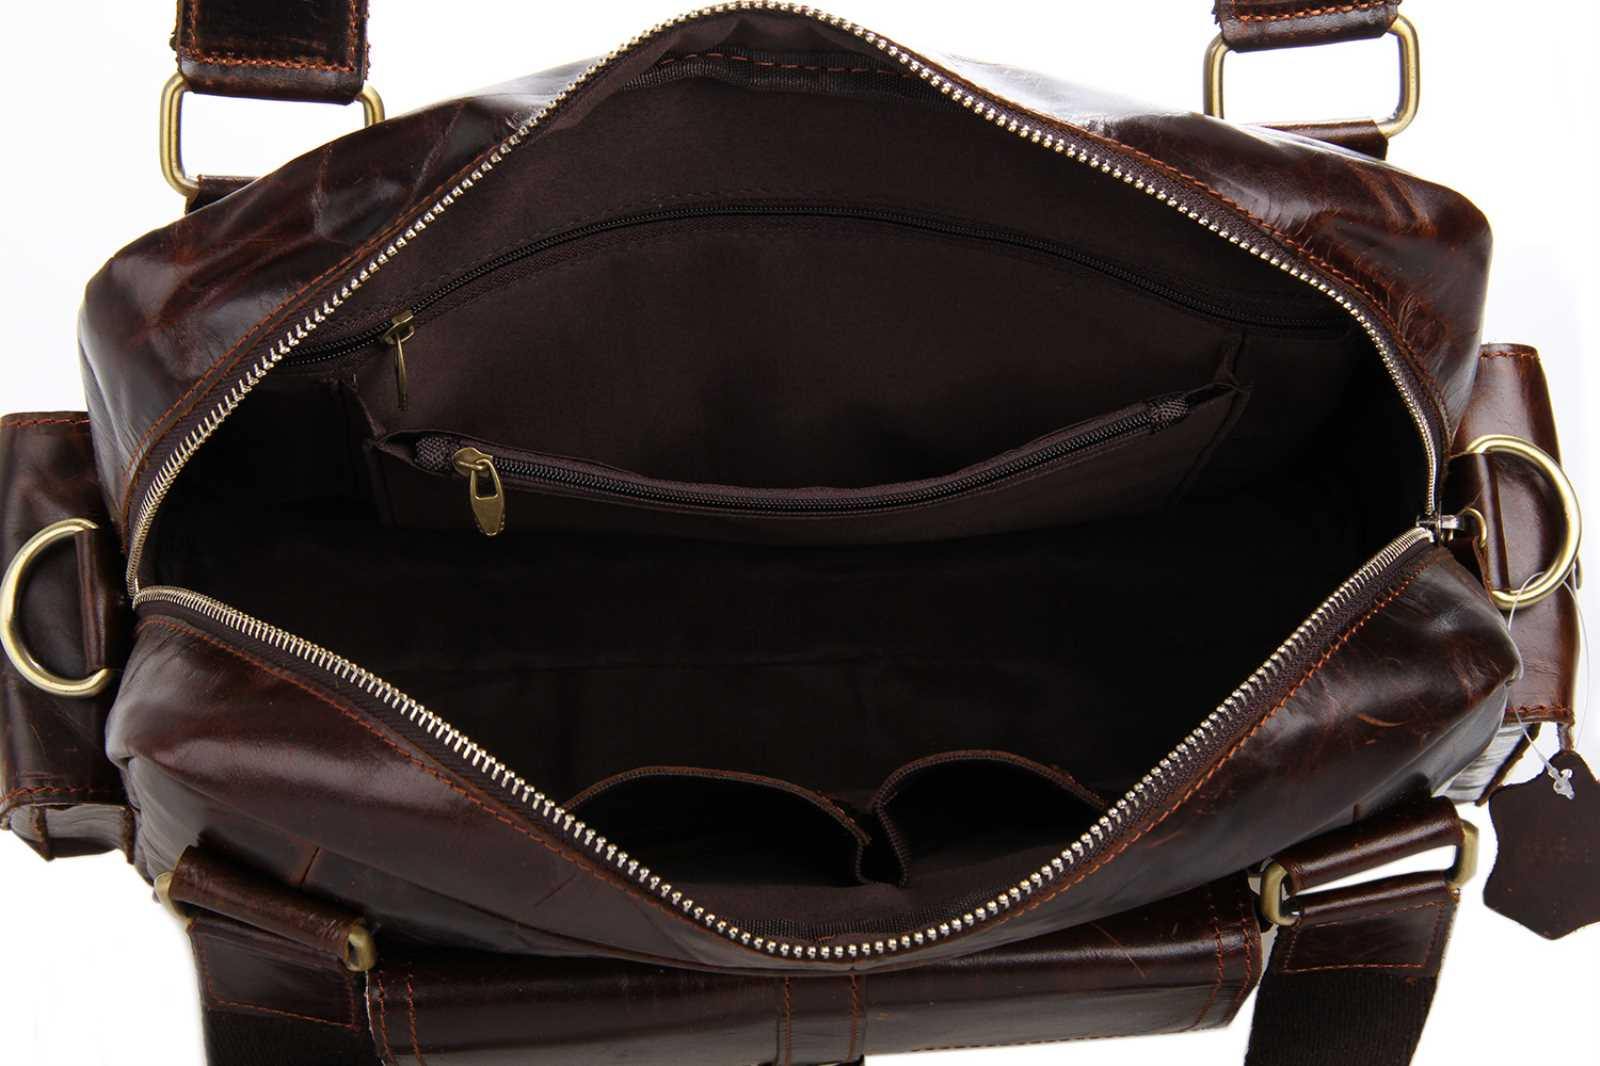 New Arrival Handmade Genuine Leather Mens Bag 13" Laptop Bag Tote Travel Bag JM292 - Super Buyer